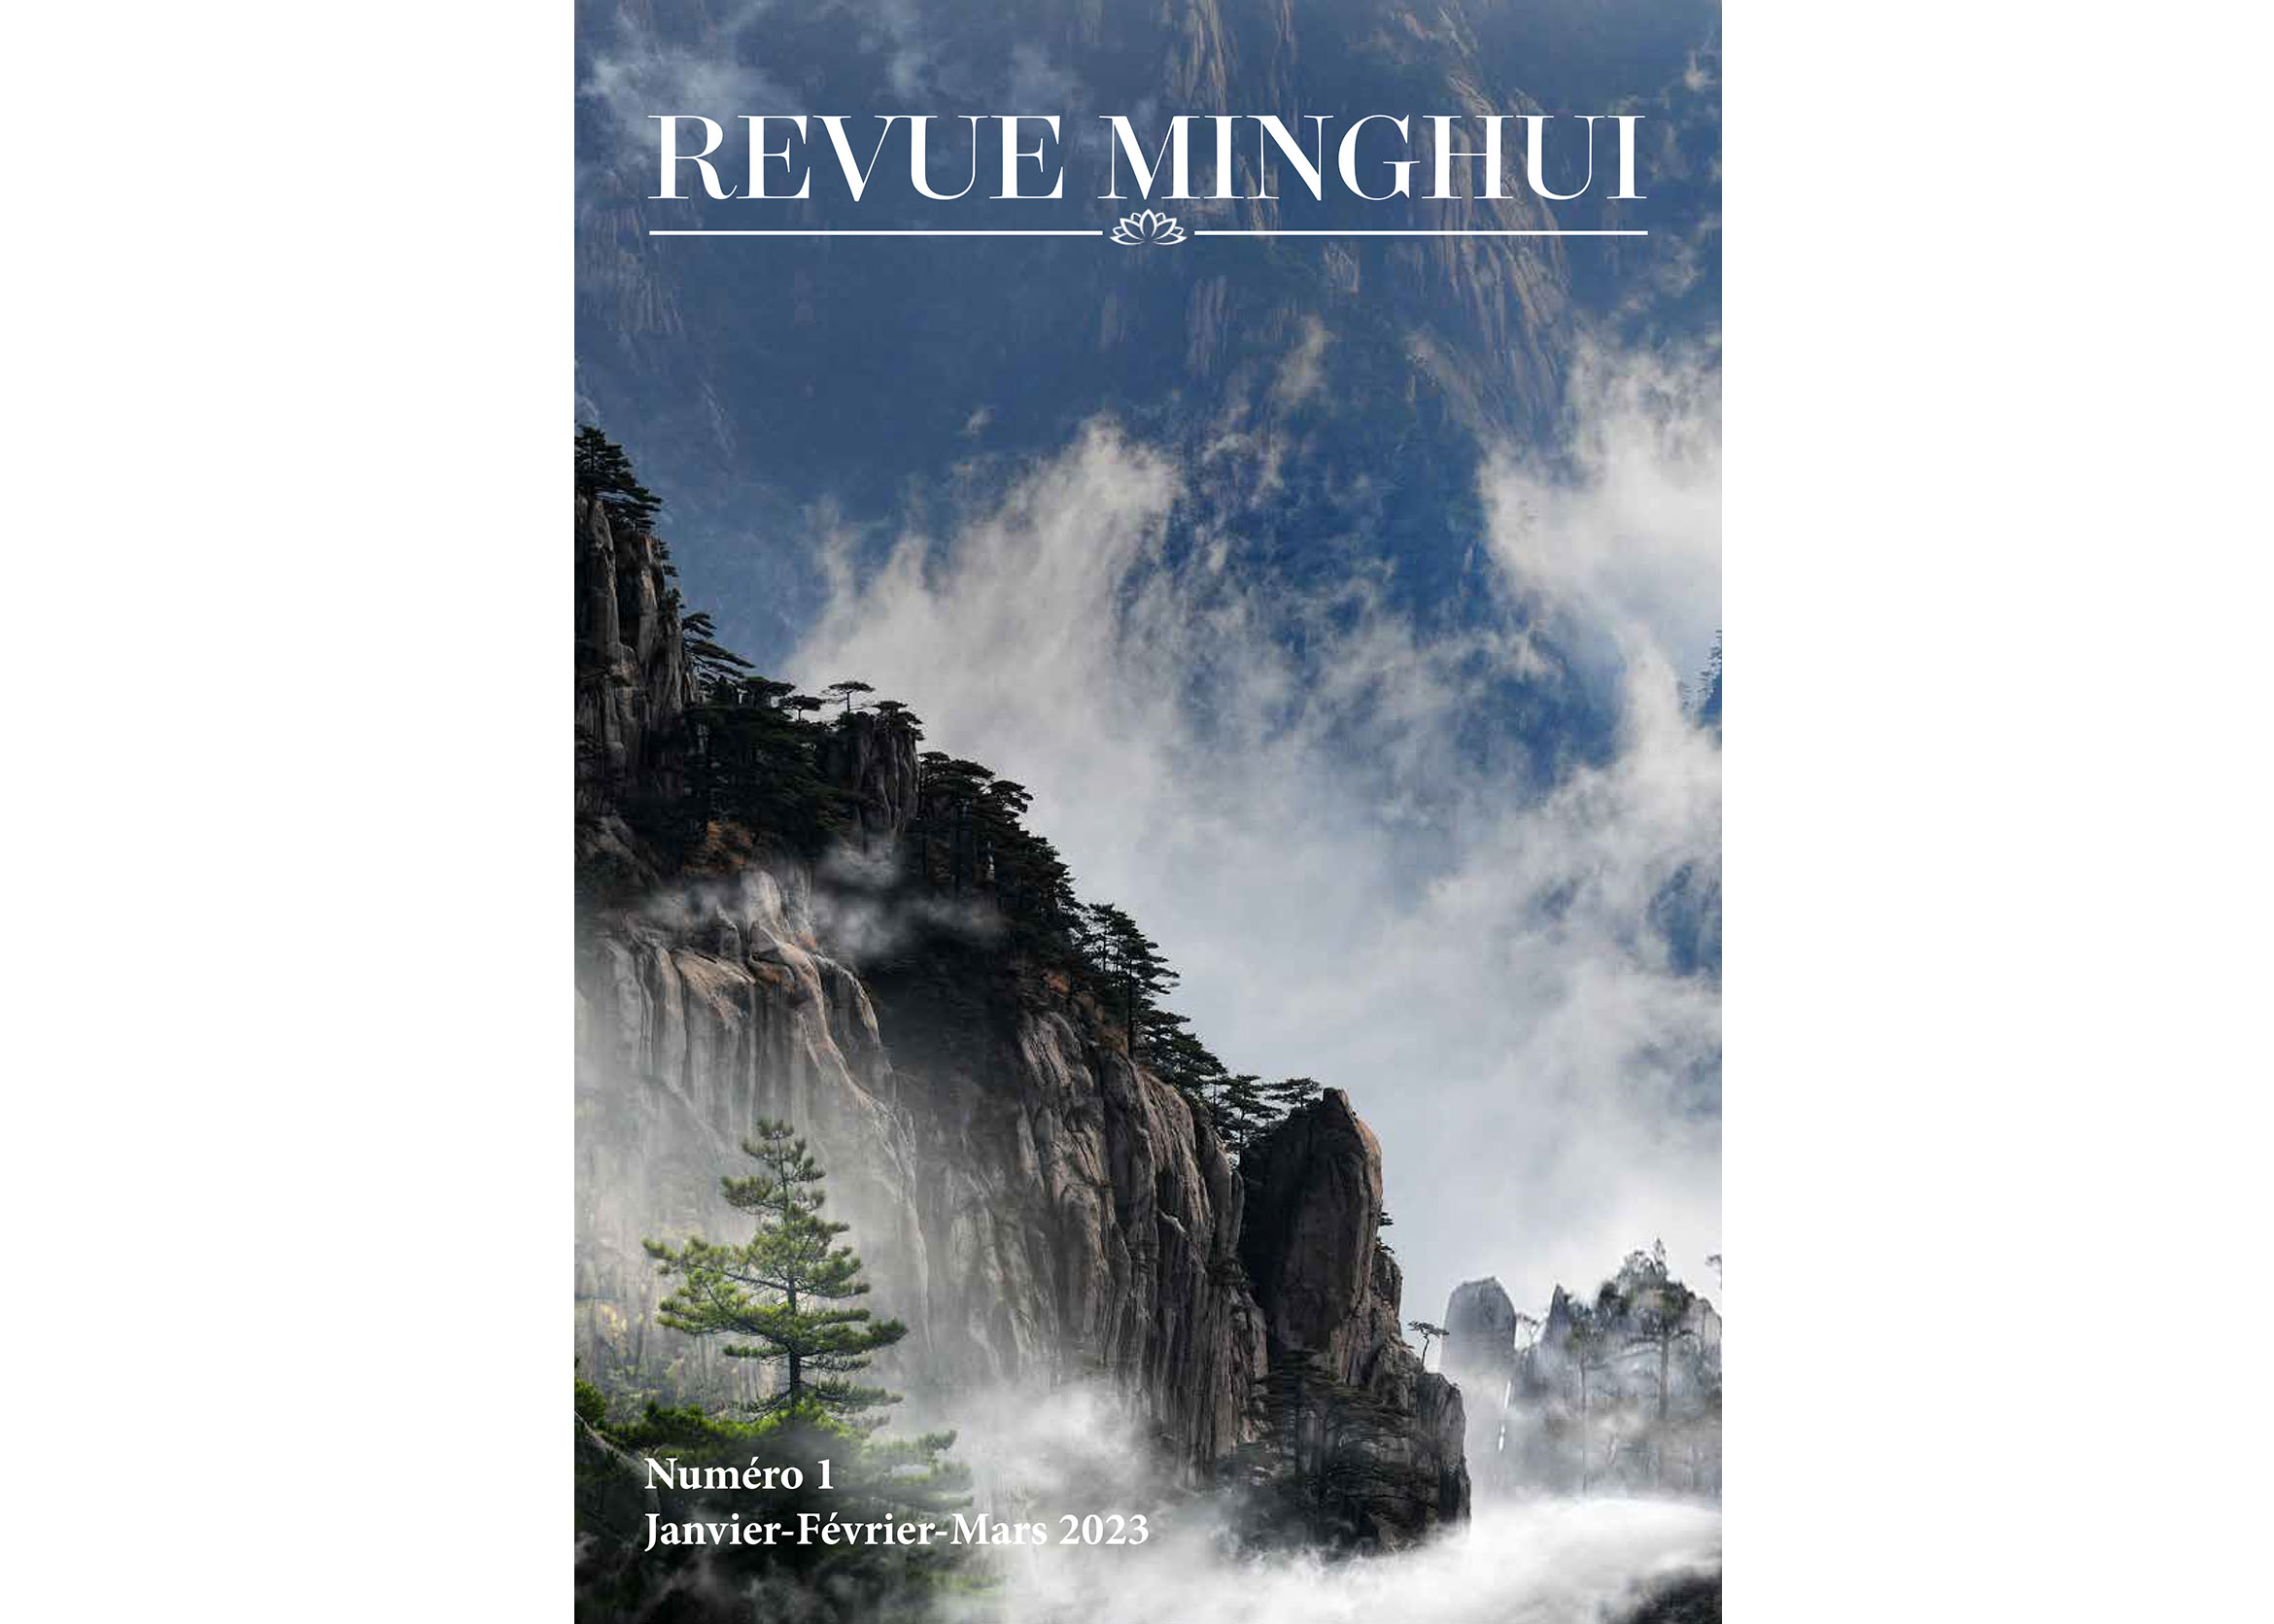 Image for article Annonce: Sortie du premier numéro de la Revue Minghui en français